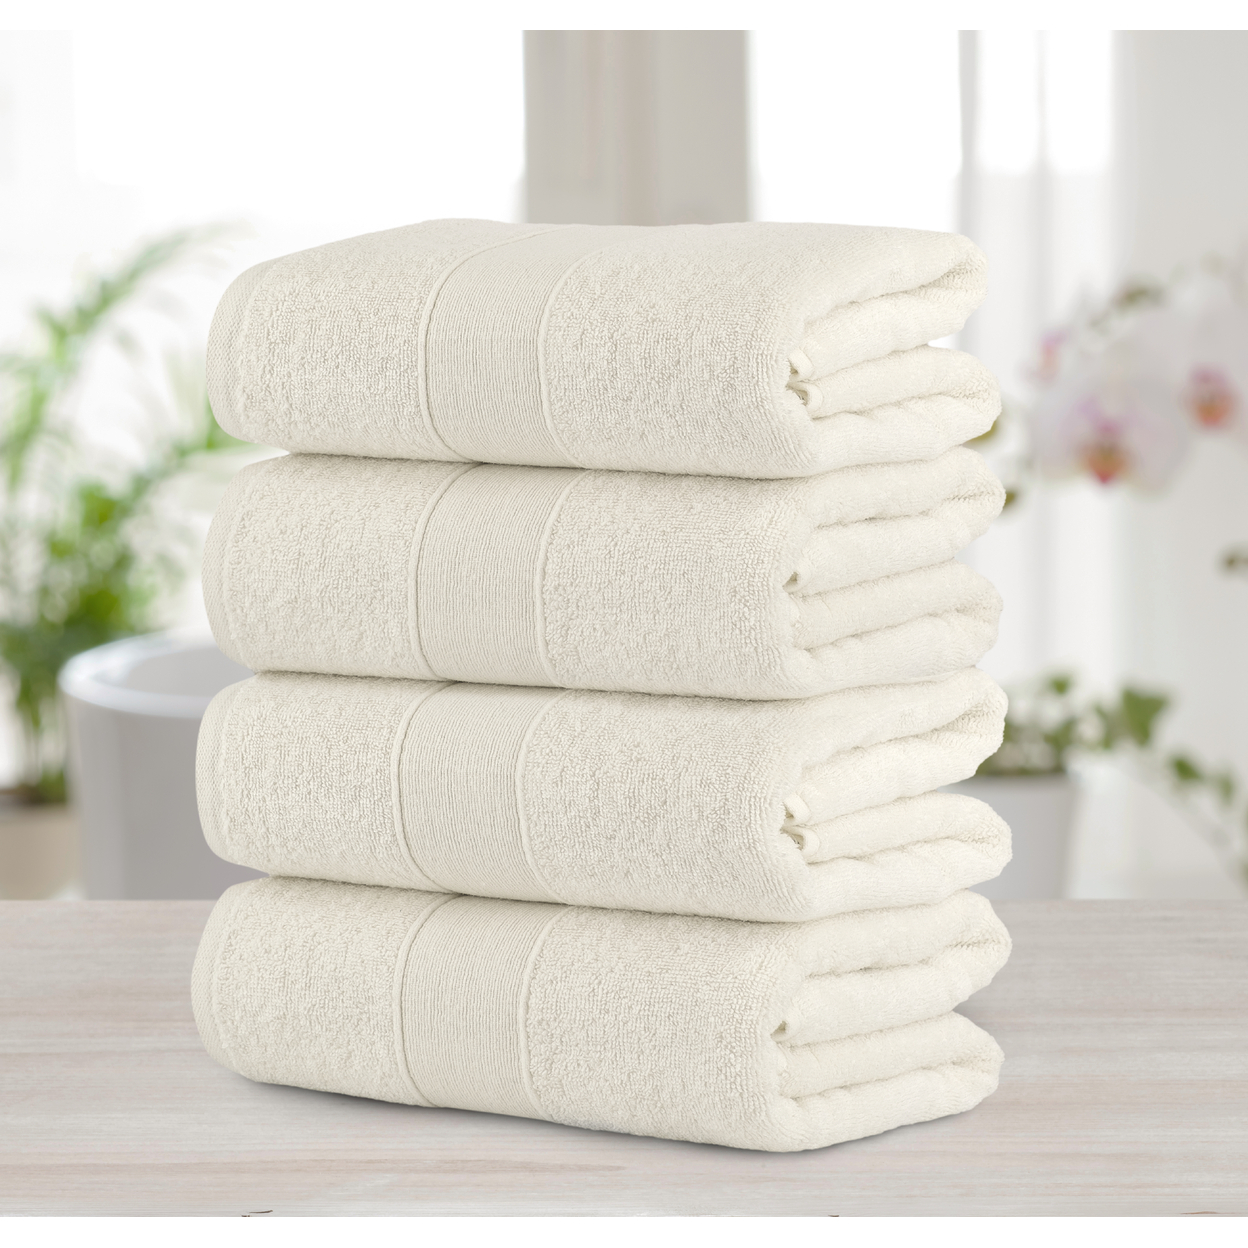 Chic Home Luxurious 4-Piece 100% Pure Turkish Cotton Bath Towels, 30 X 54, Dobby Border Design, OEKO-TEX Certified Set - Beige